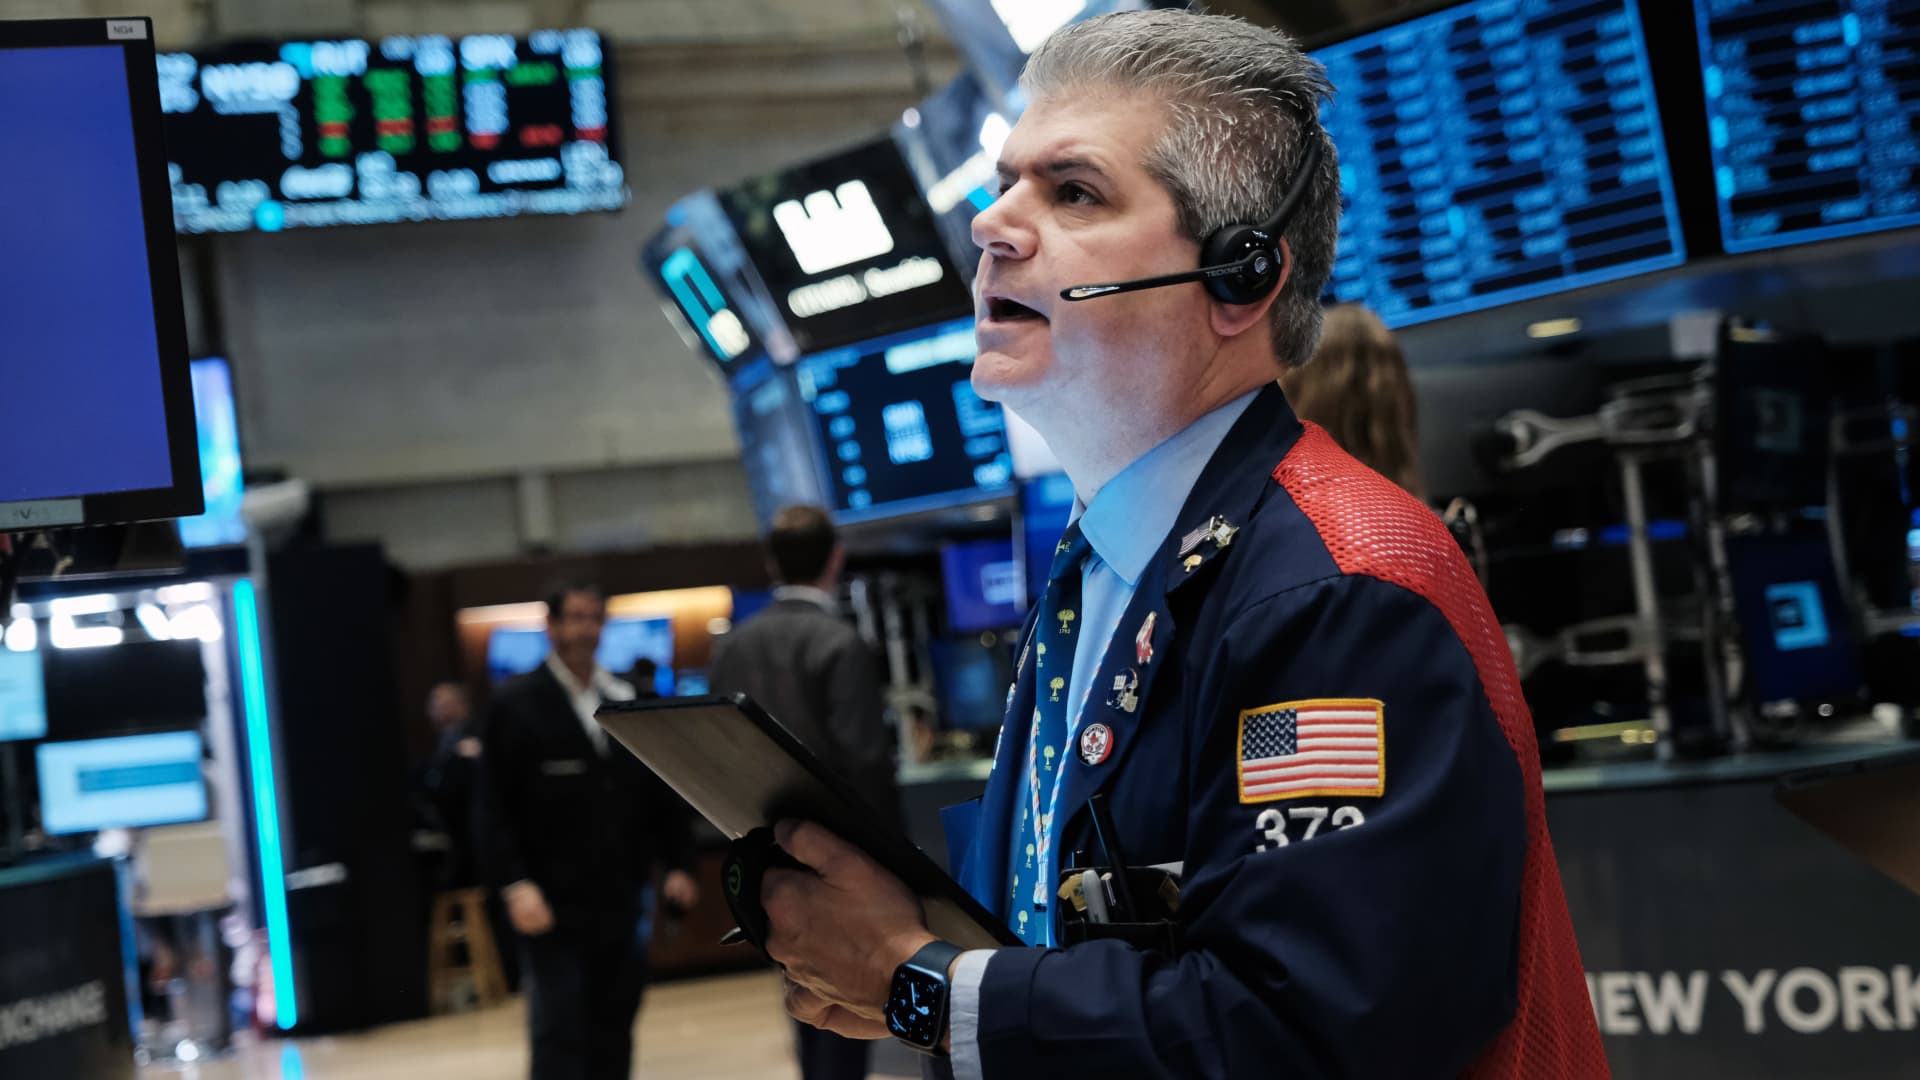 Futuros de ações caem enquanto Wall Street aguarda resultados das eleições de meio de mandato